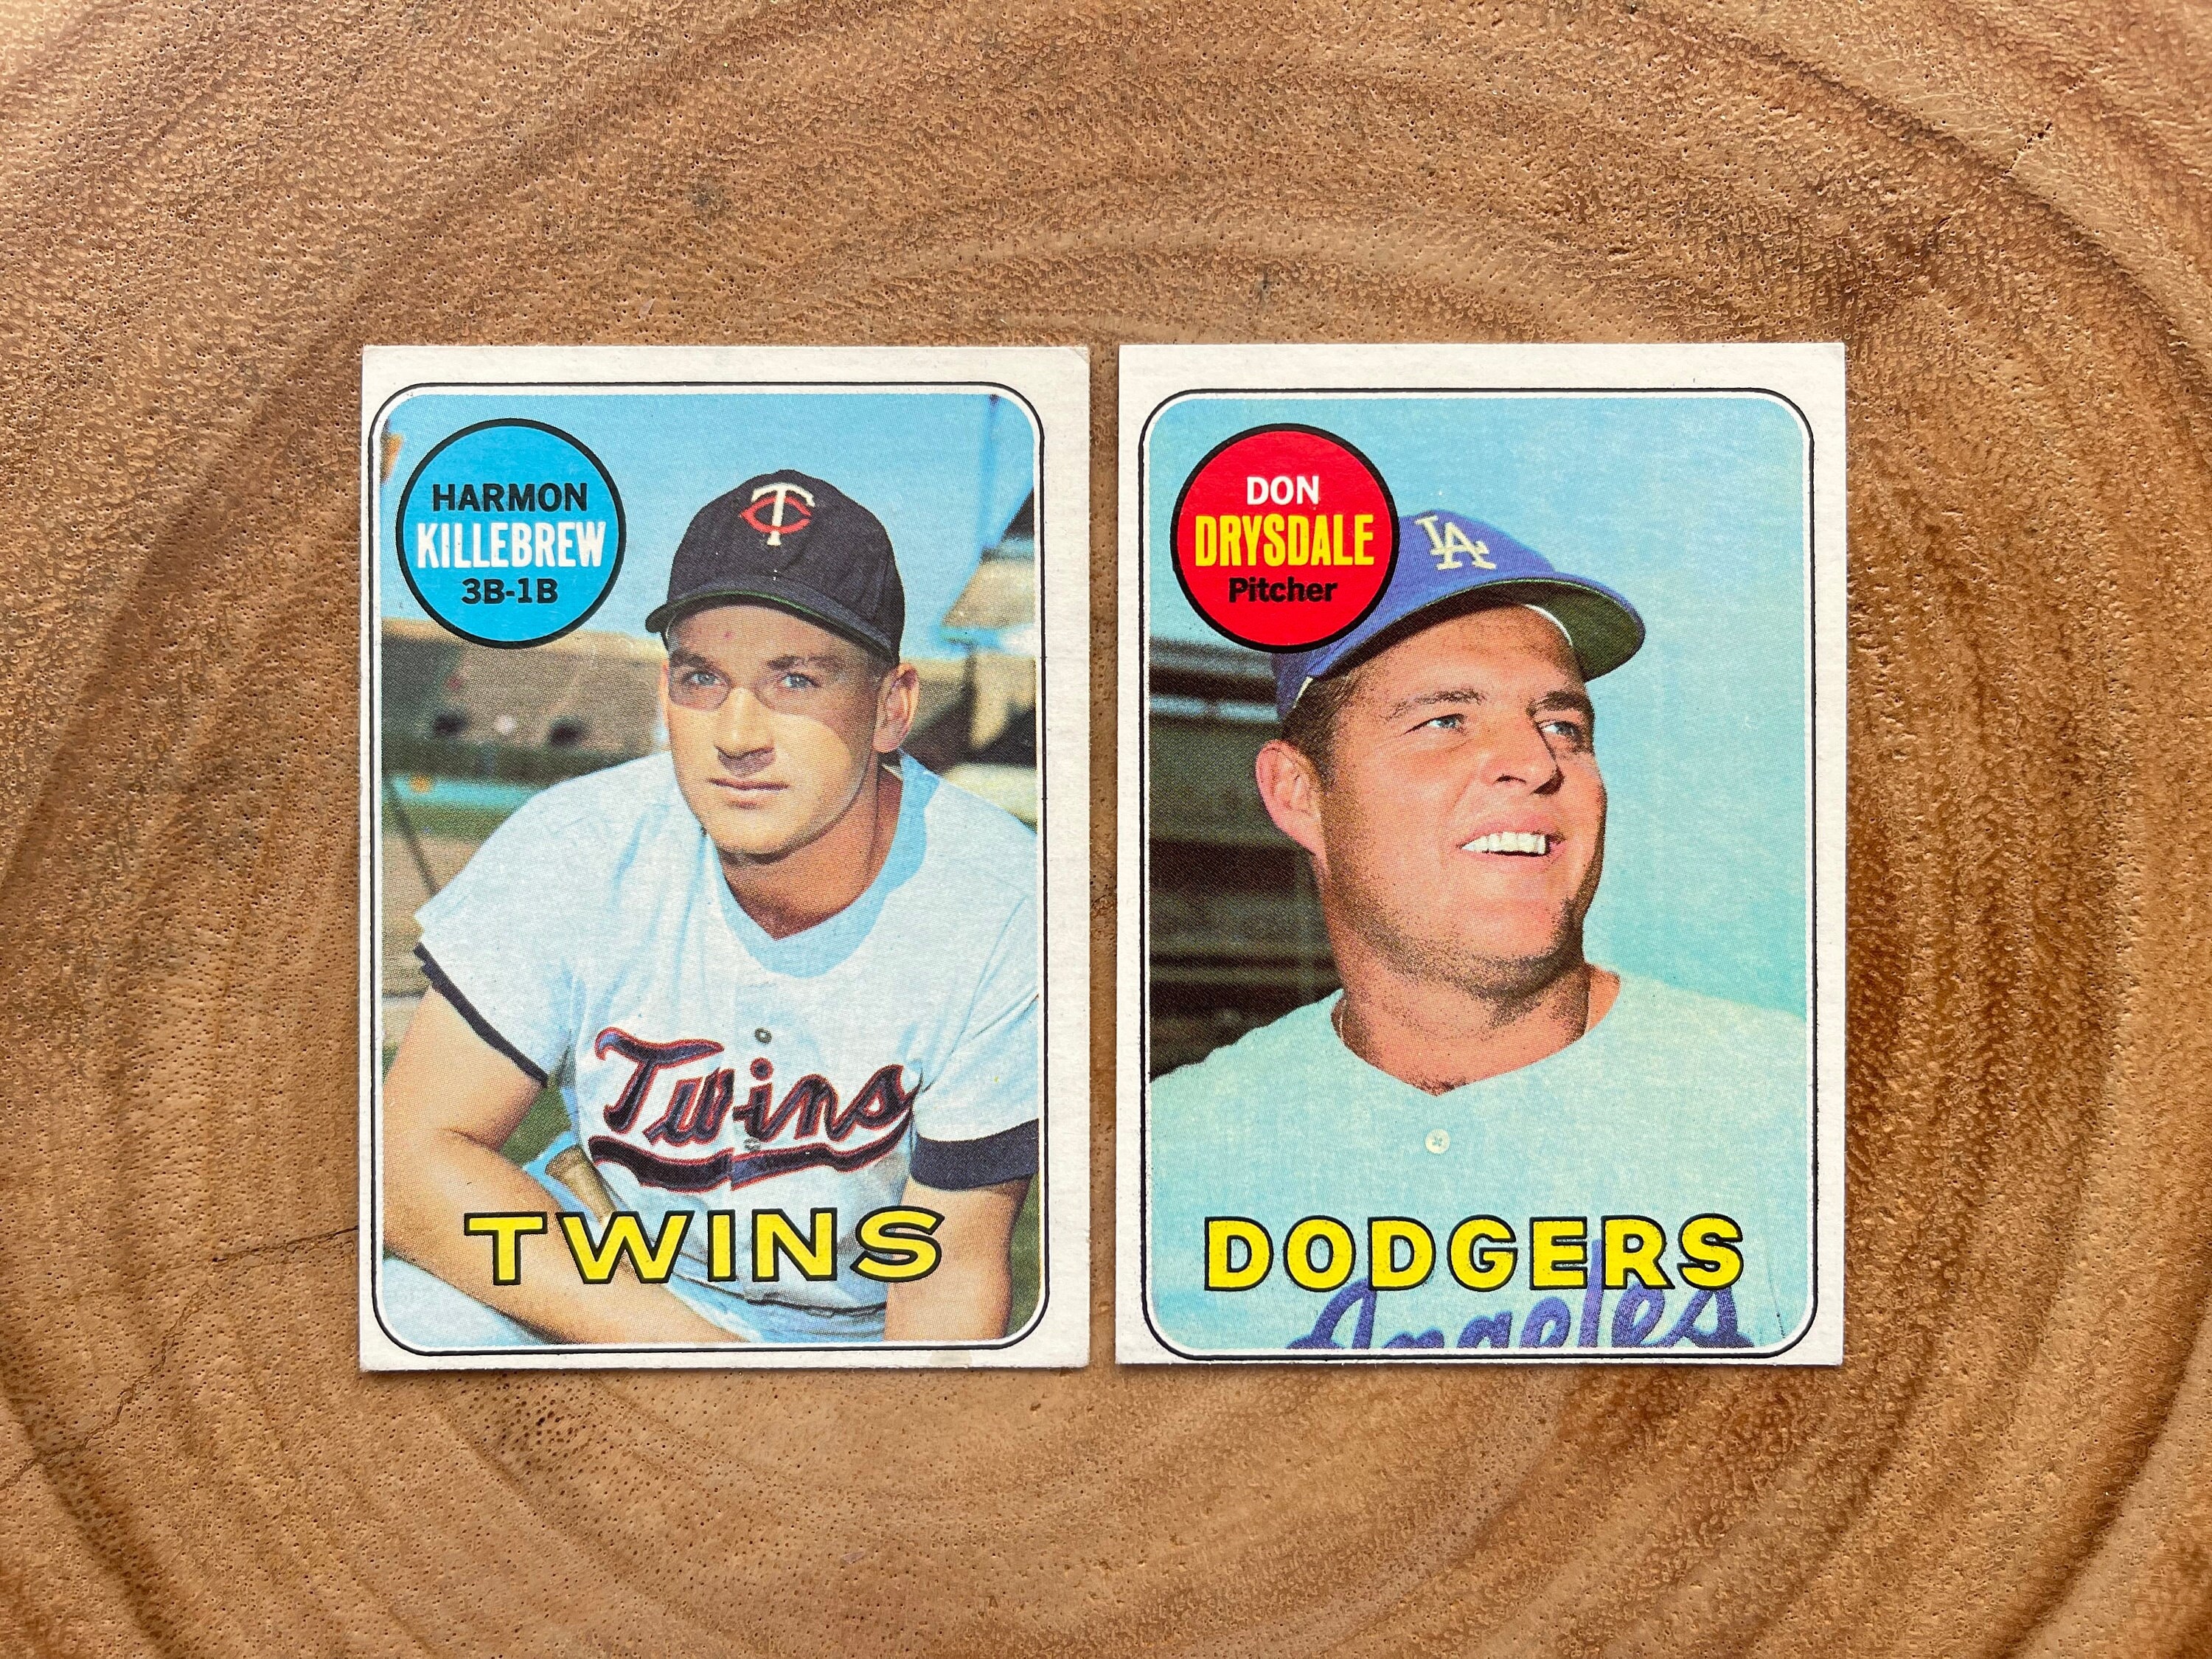 1969 topps baseball cards